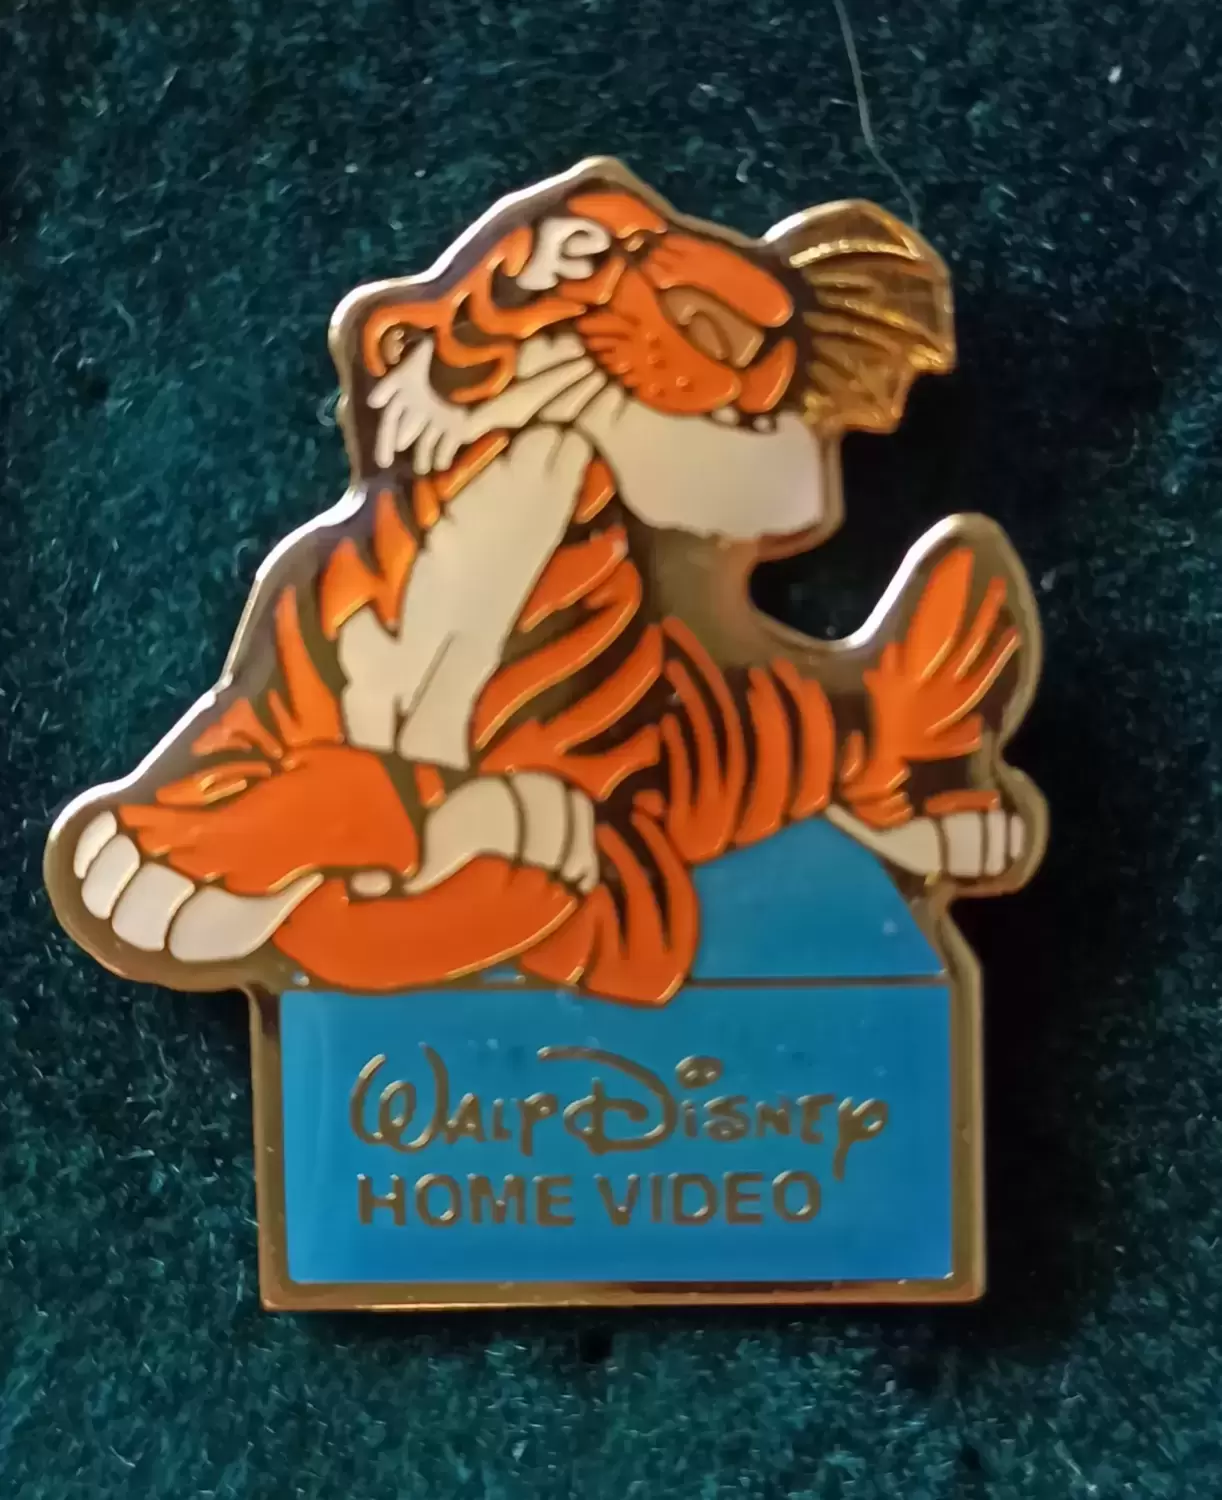 Walt Disney Home Vidéo - Shere Khan